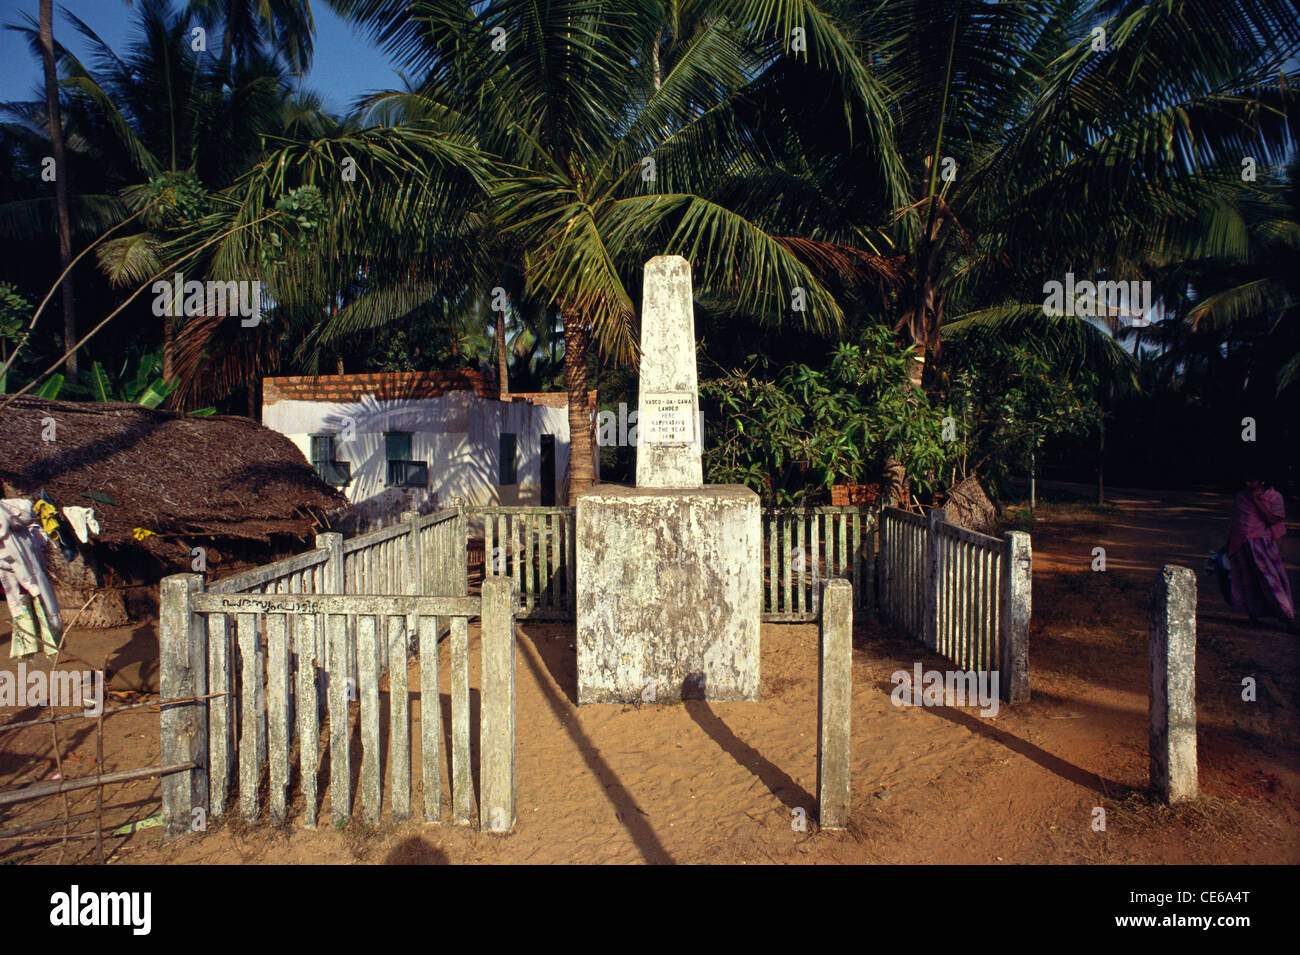 Vasco De Gama landete in 1498 bezeichnet auf monumentale Säule im Palm gesäumten Kappad Beach; Indien Stockfoto